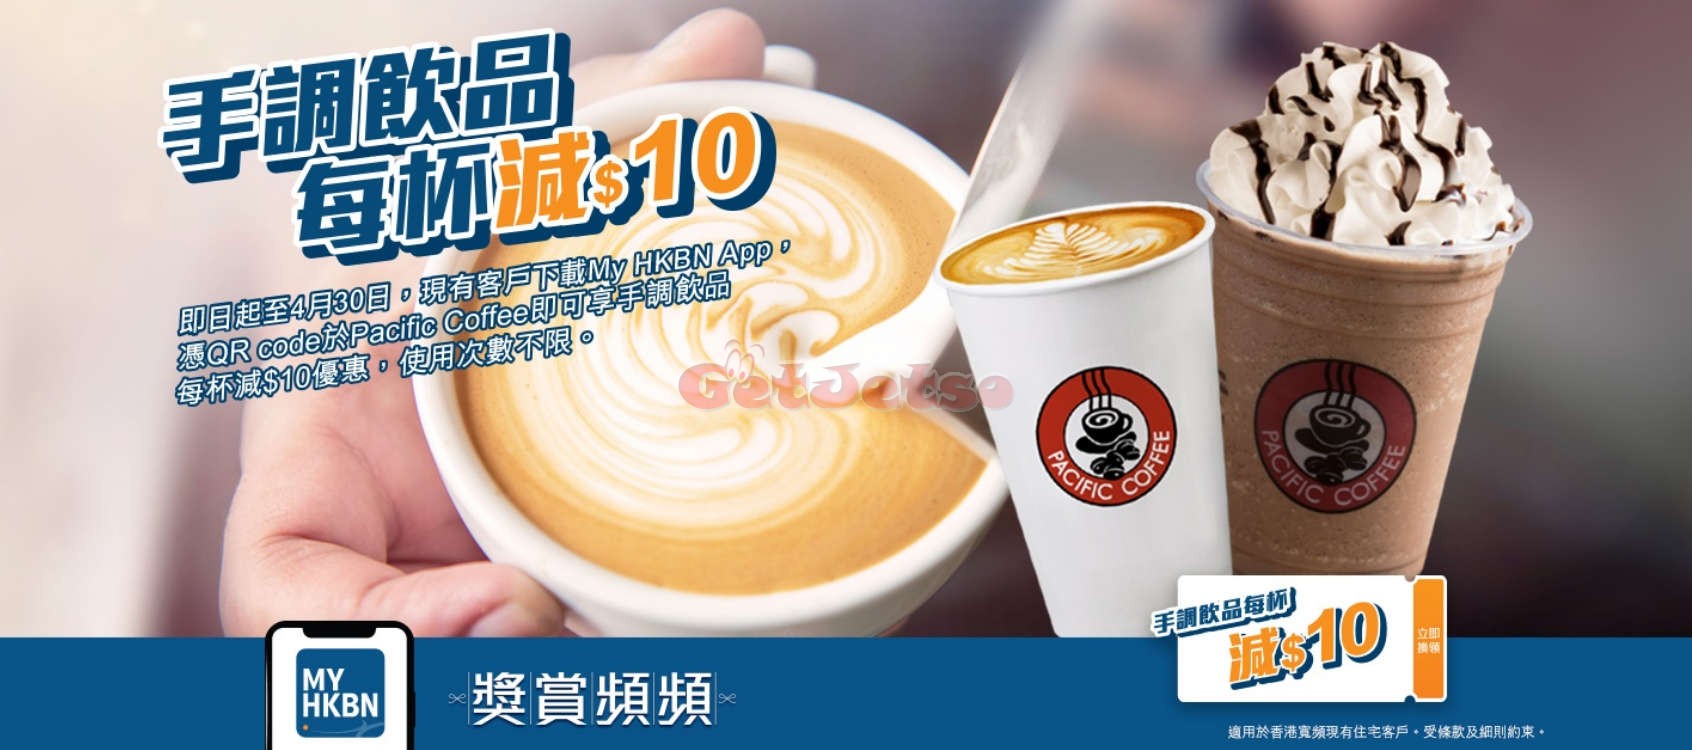 香港寬頻免費送酒精搓手液、Pacific Coffee 優惠比客戶(至20年4月30日)圖片2